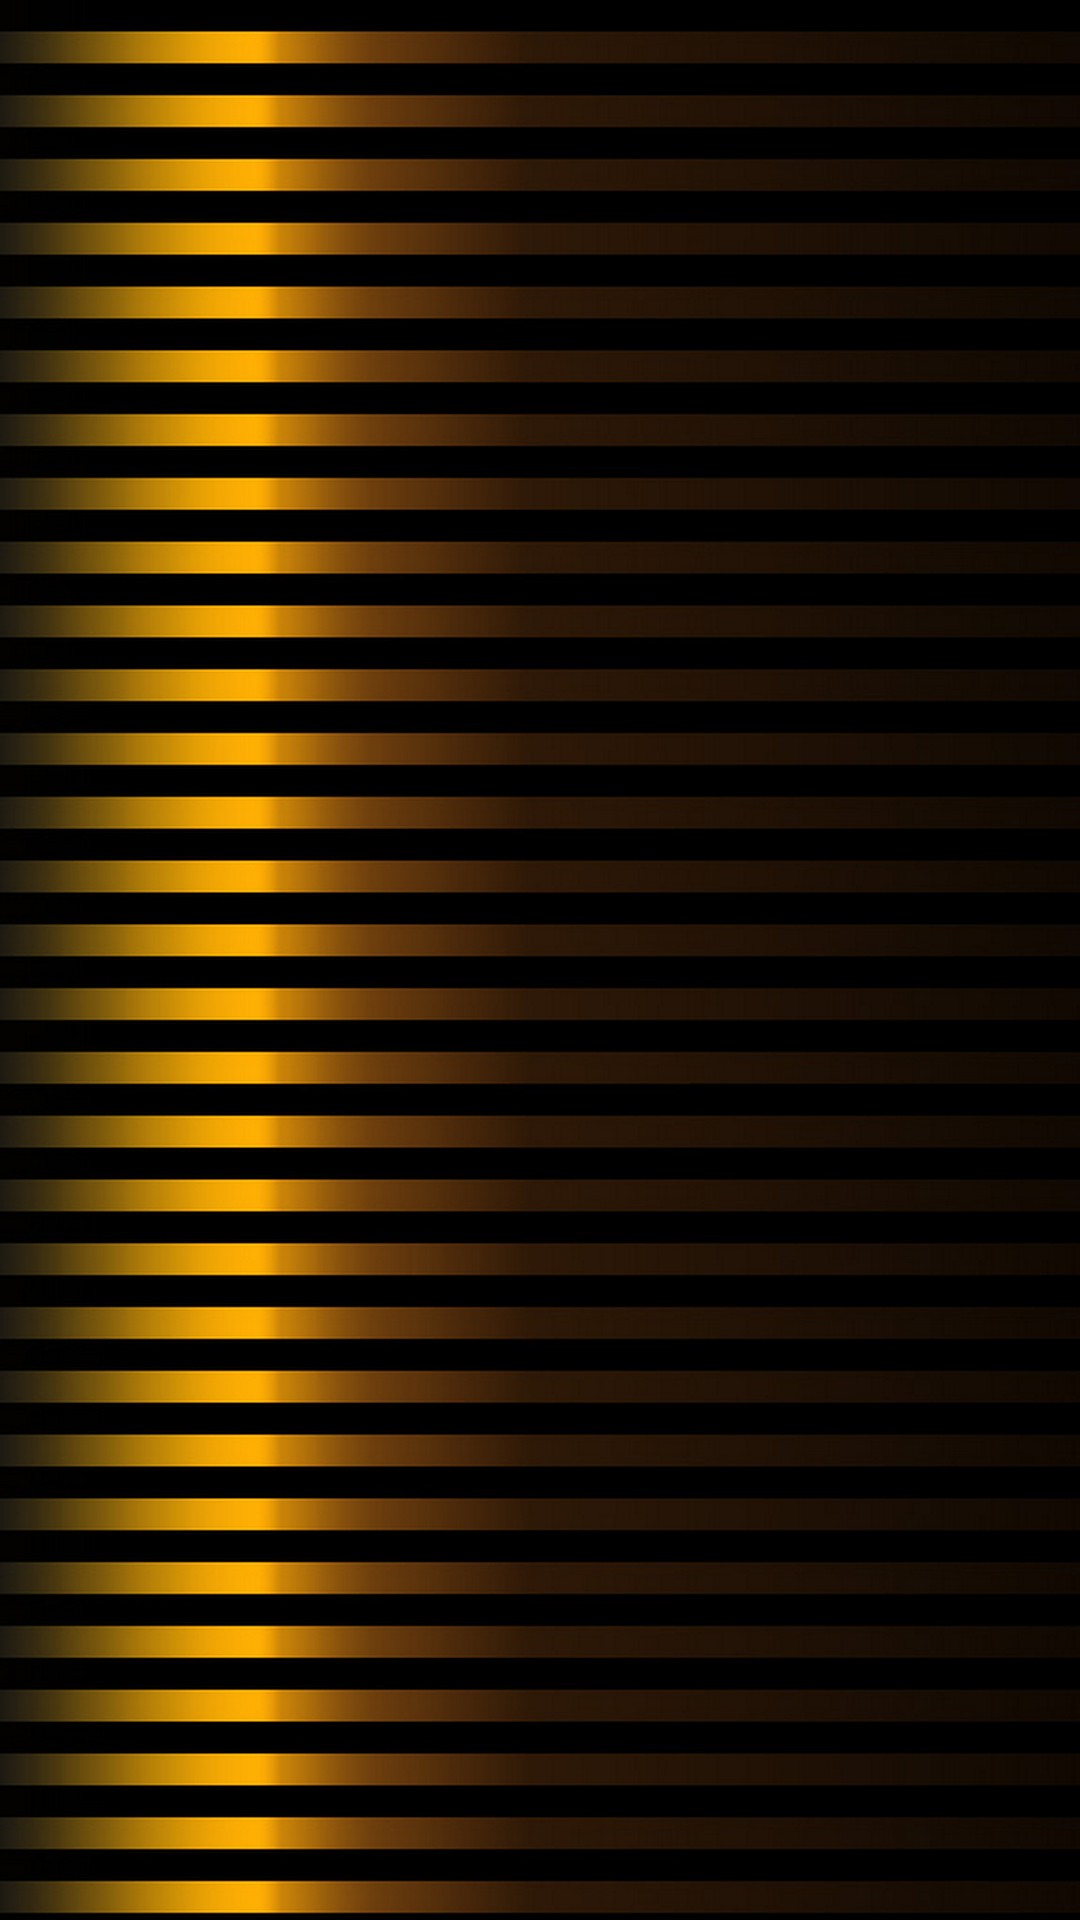 schwarz goldene tapete,schwarz,gelb,linie,muster,metall